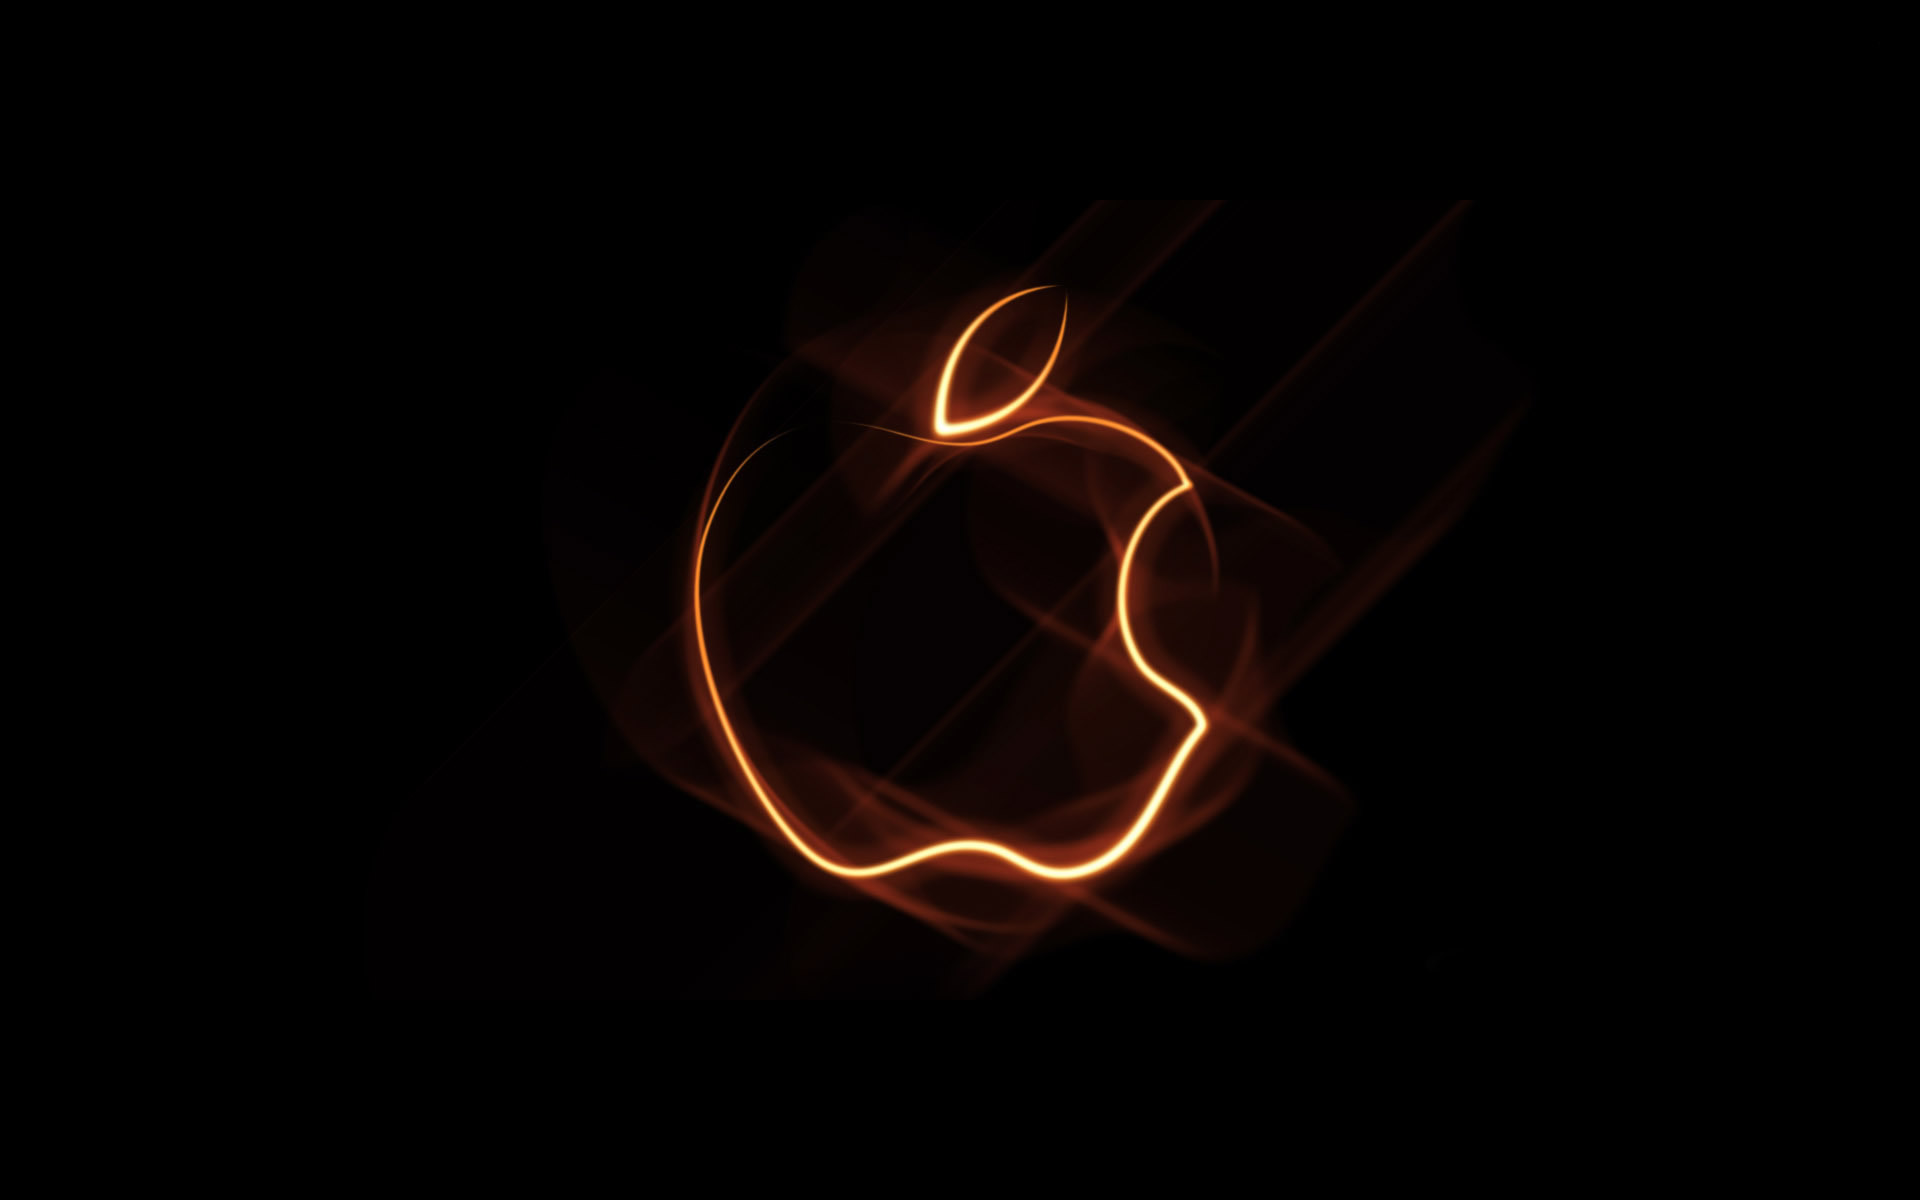 35 Gambar Apple Logo Wallpaper Hd Black terbaru 2020